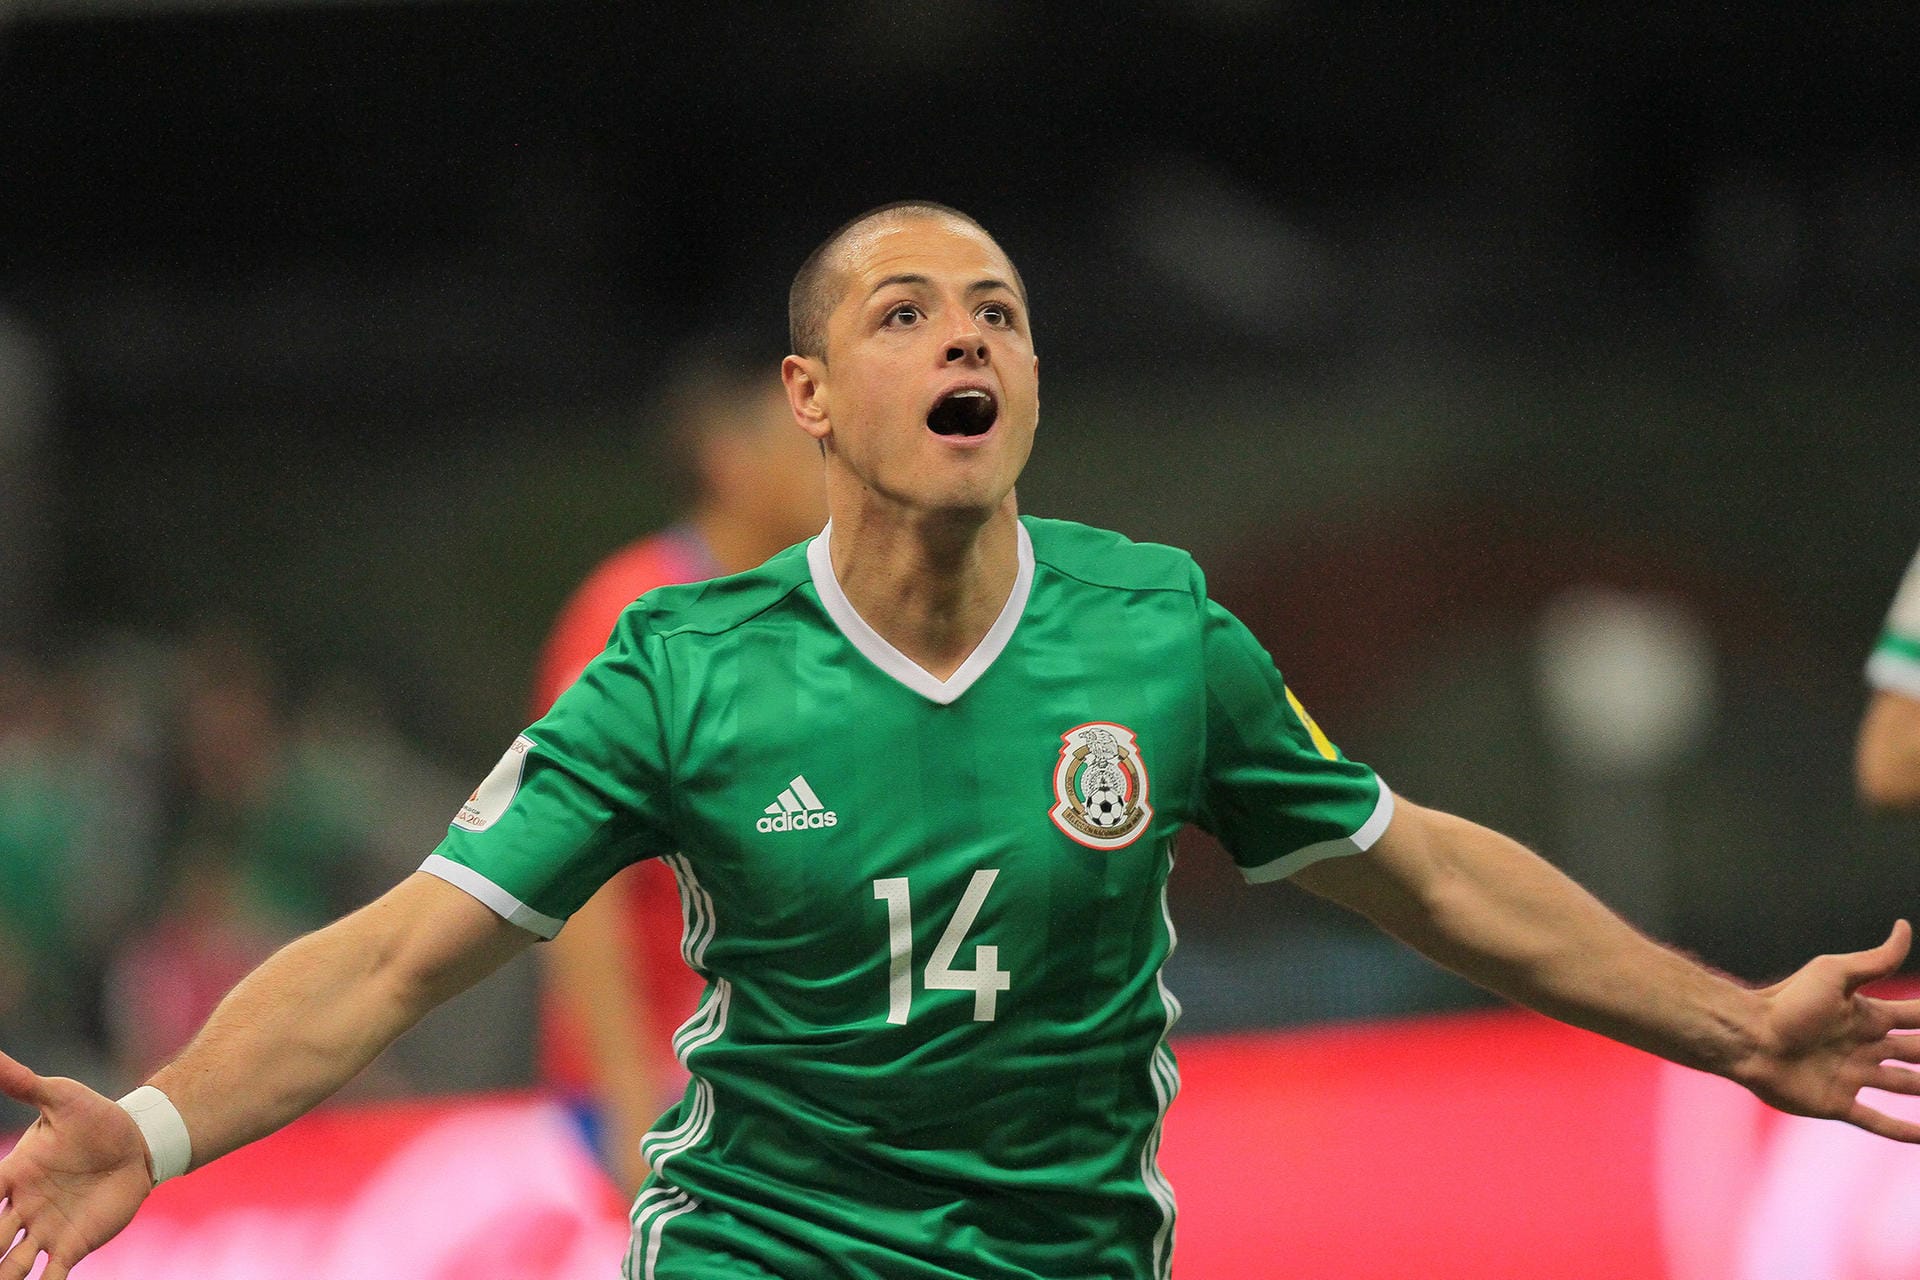 WM-Qualifikation Mexiko -Einen Tag zuvor löste Mexiko das WM-Ticket. Durch ein 1:0 gegen Panama setzten sich Superstar Chicharito und Co. uneinholbar von ihren Verfolgern in der nord- und mittelamerikanischen Qualifikationsgruppe ab. Costa Rica